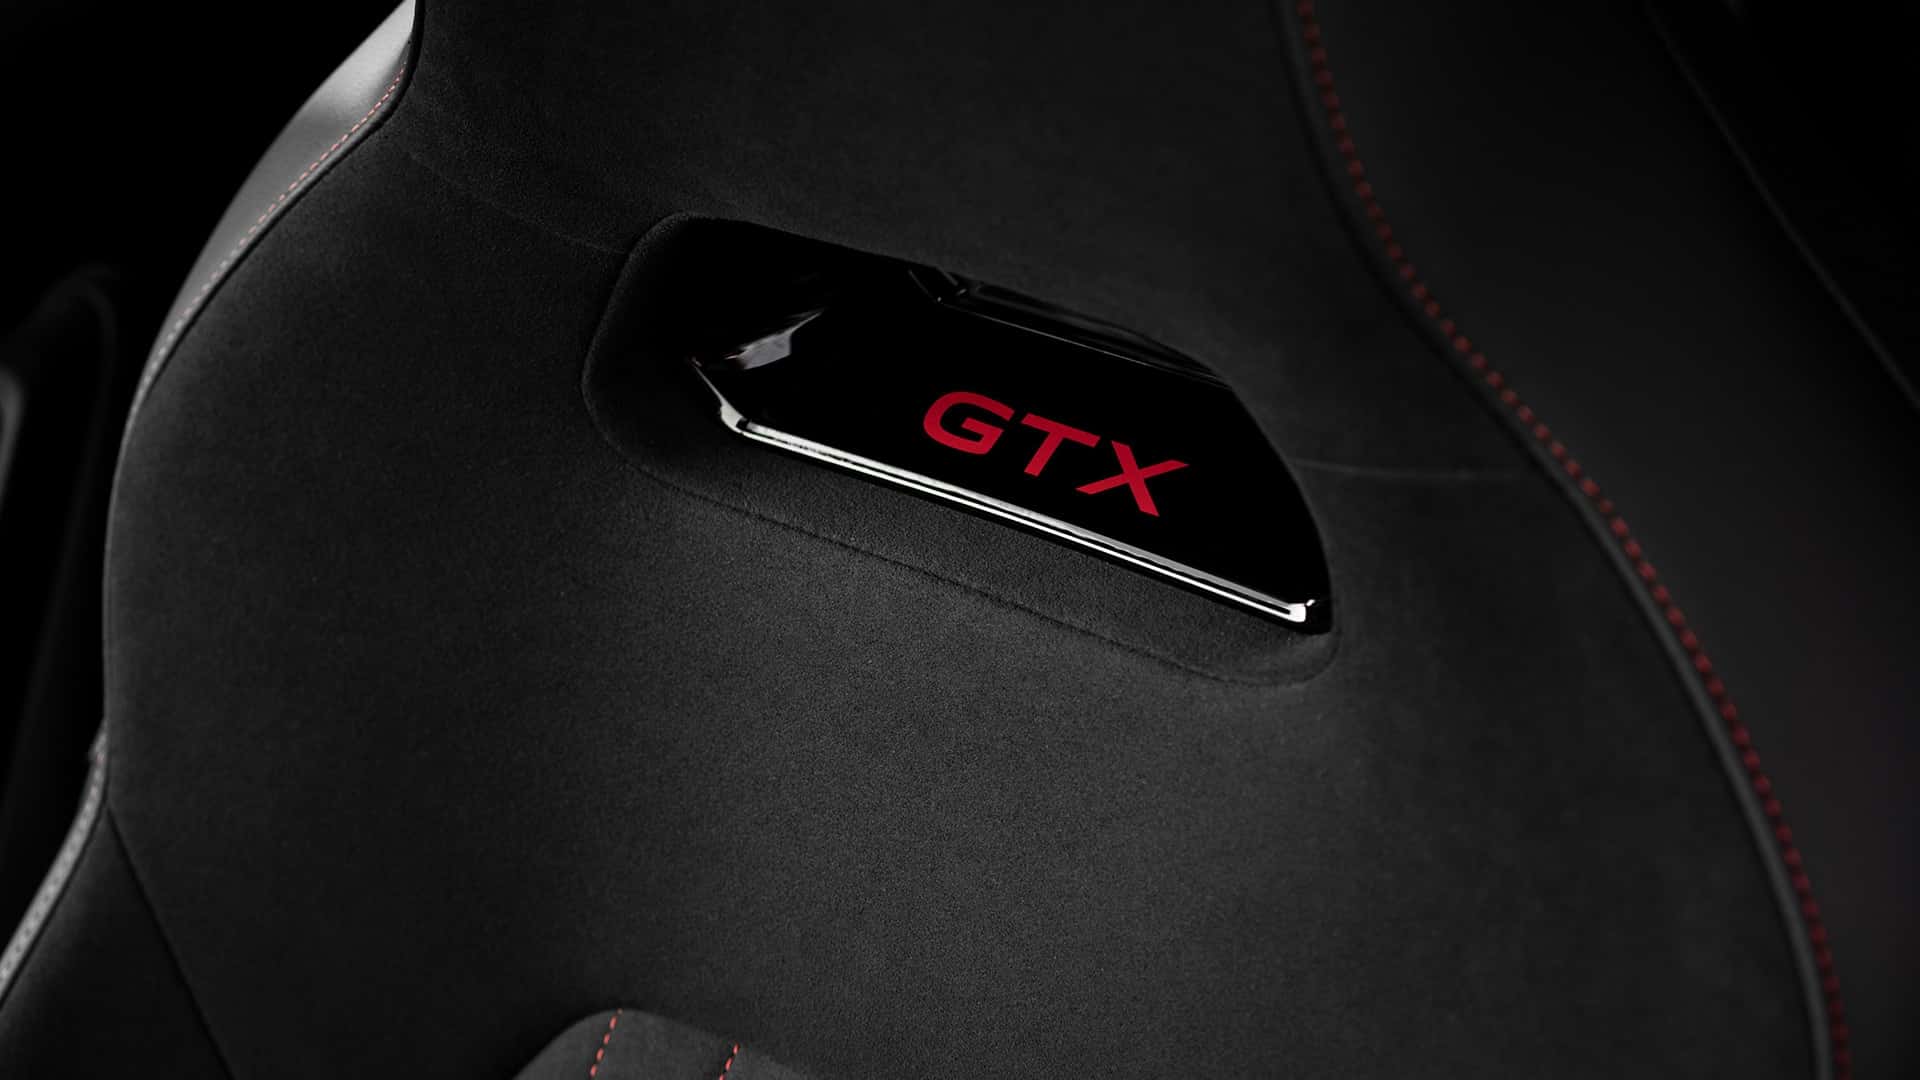 Yeni ID.3 GTX Performance, markanın en güçlü elektrik motoruyla geldi